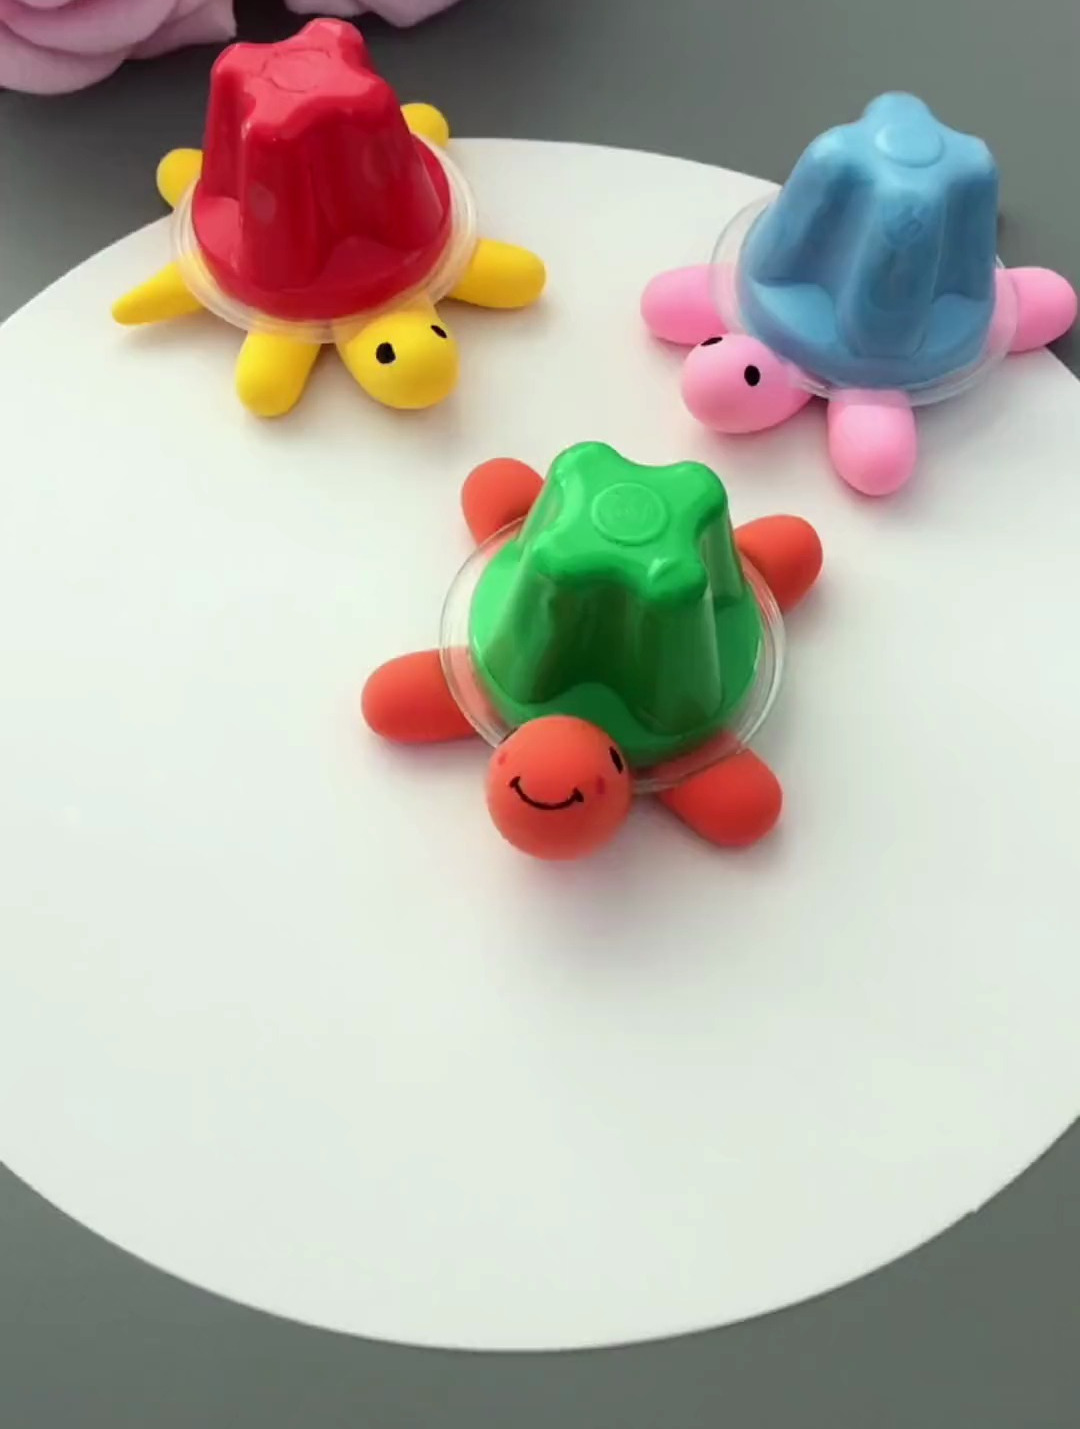 吃完果冻壳不要扔,和孩子一起来做可爱的小乌龟吧!